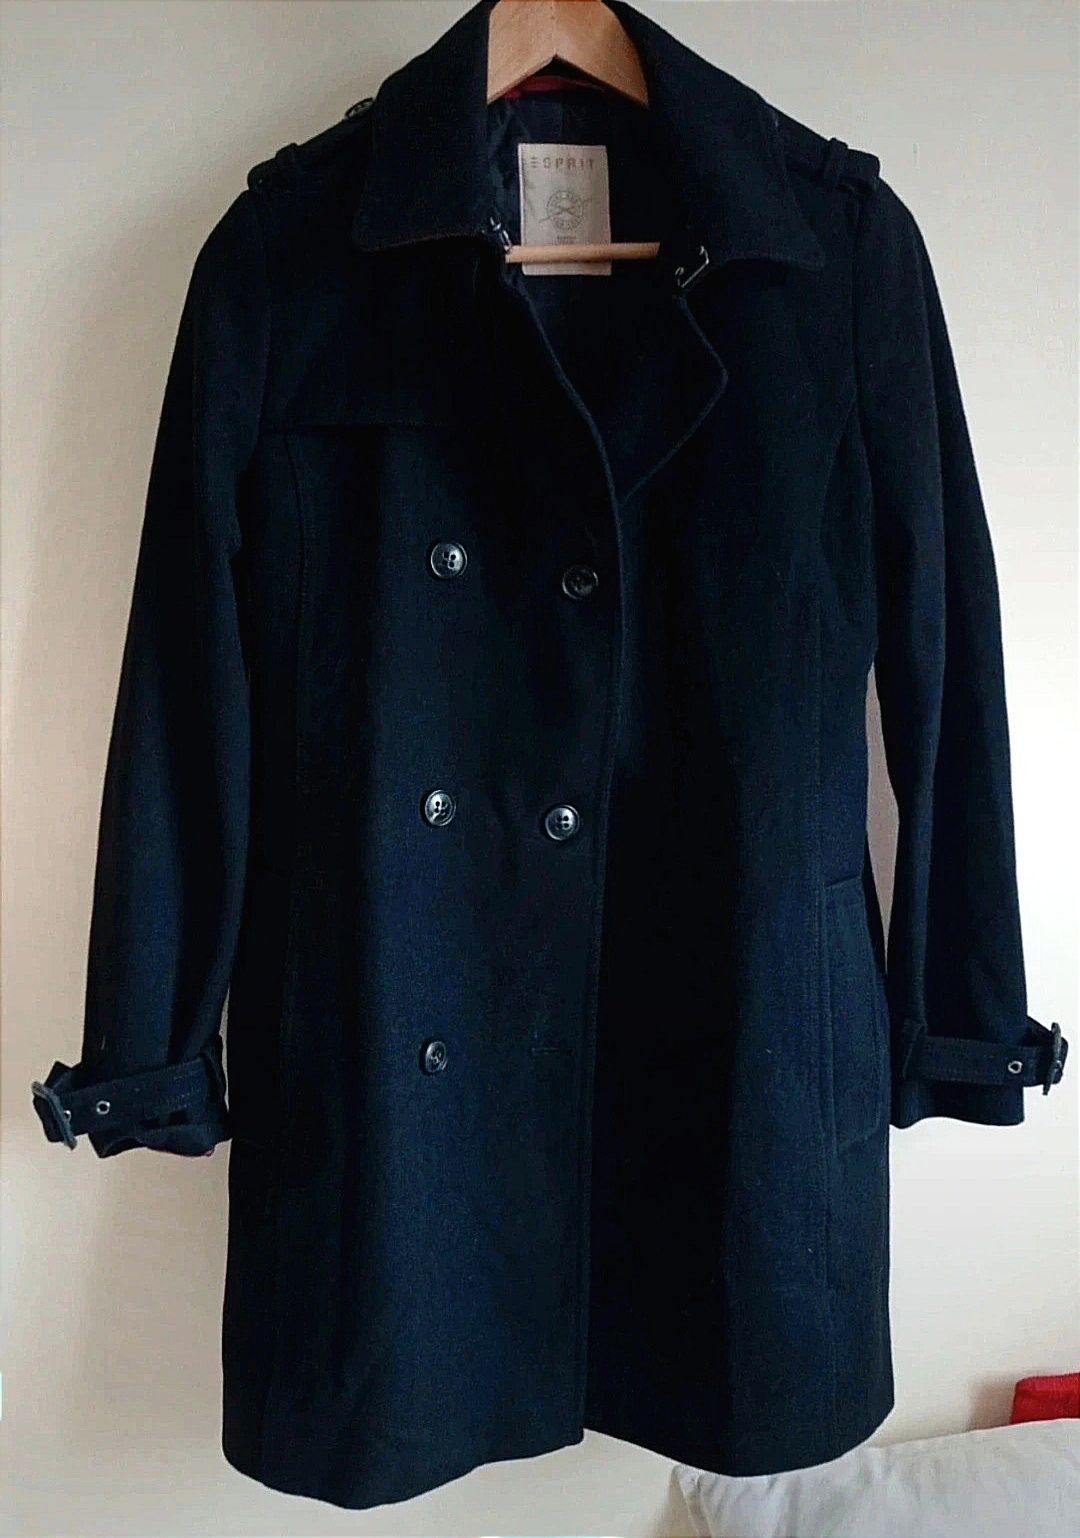 Czarny wełniany płaszcz Esprit